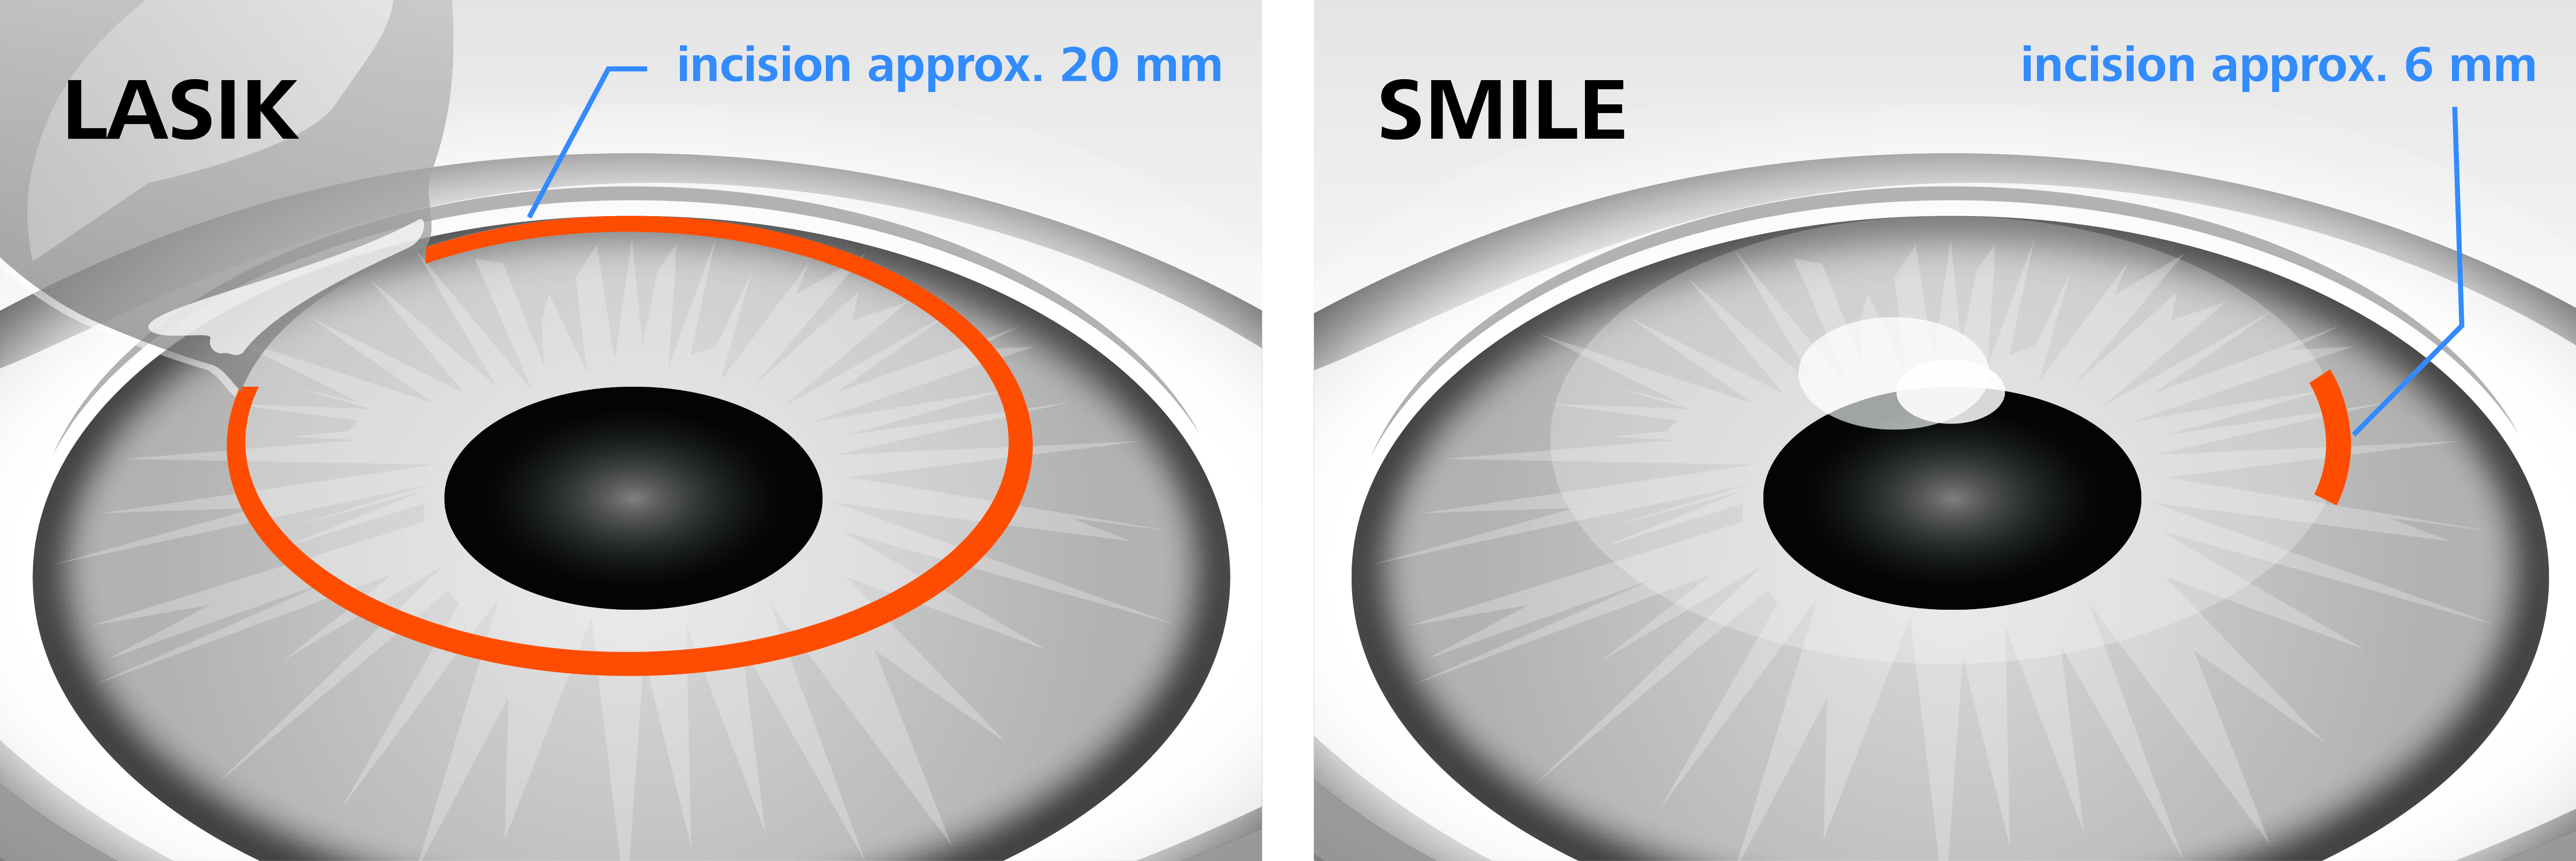 Коррекция зрения сравнение. Метод ласик лазерная коррекция. Лазерная коррекция зрения метод Фемто ласик. Операция Femto LASIK И smile. RELEX smile лазерная коррекция зрения.